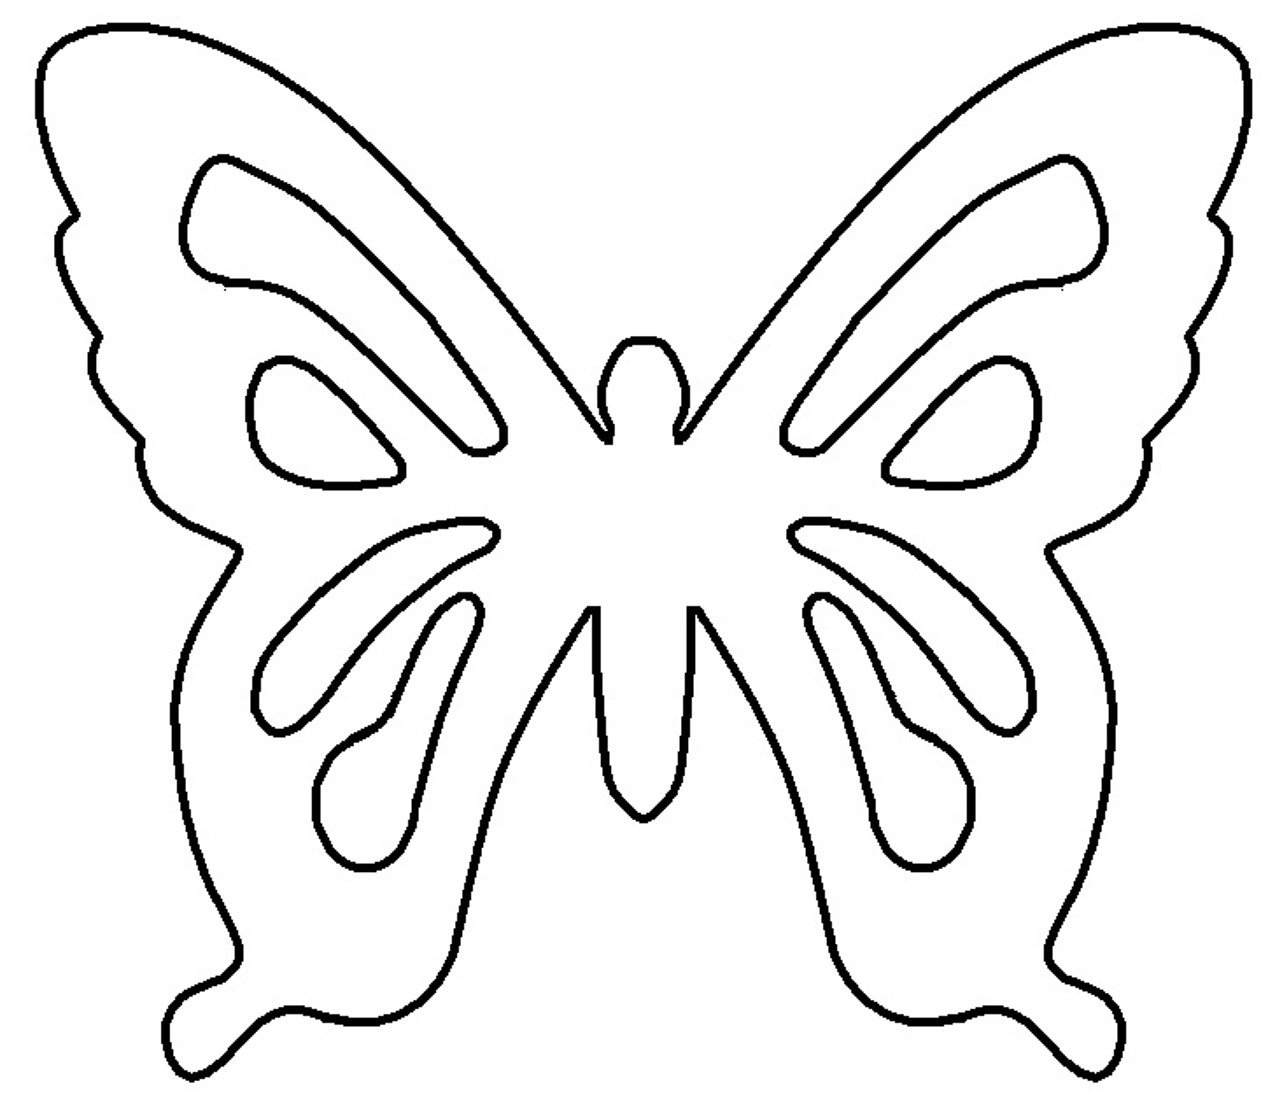 Трафарет бабочки для вырезания из бумаги